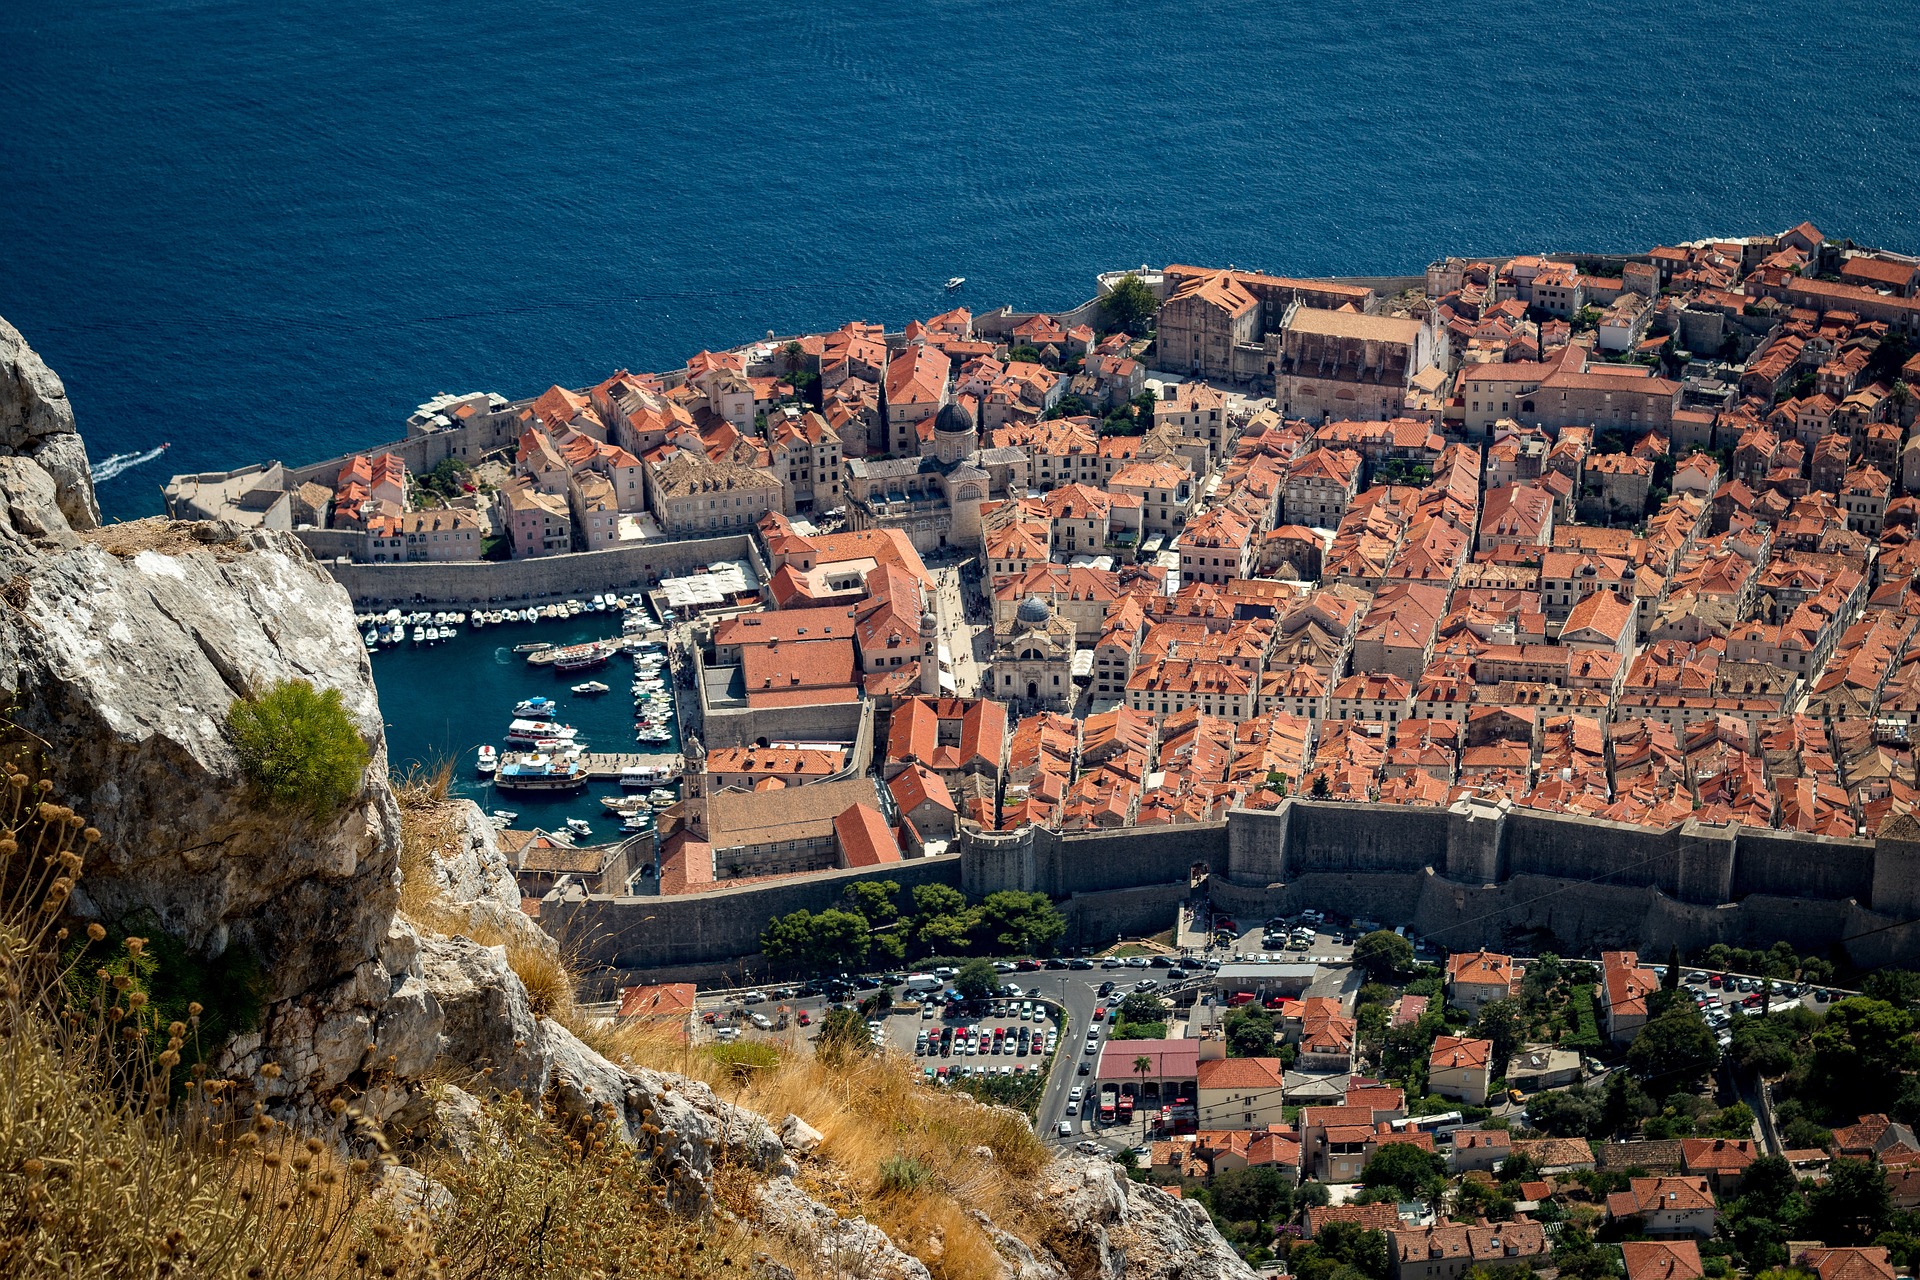 Dubrovnik: Apartmana sve više, životnog prostora za građane sve manje